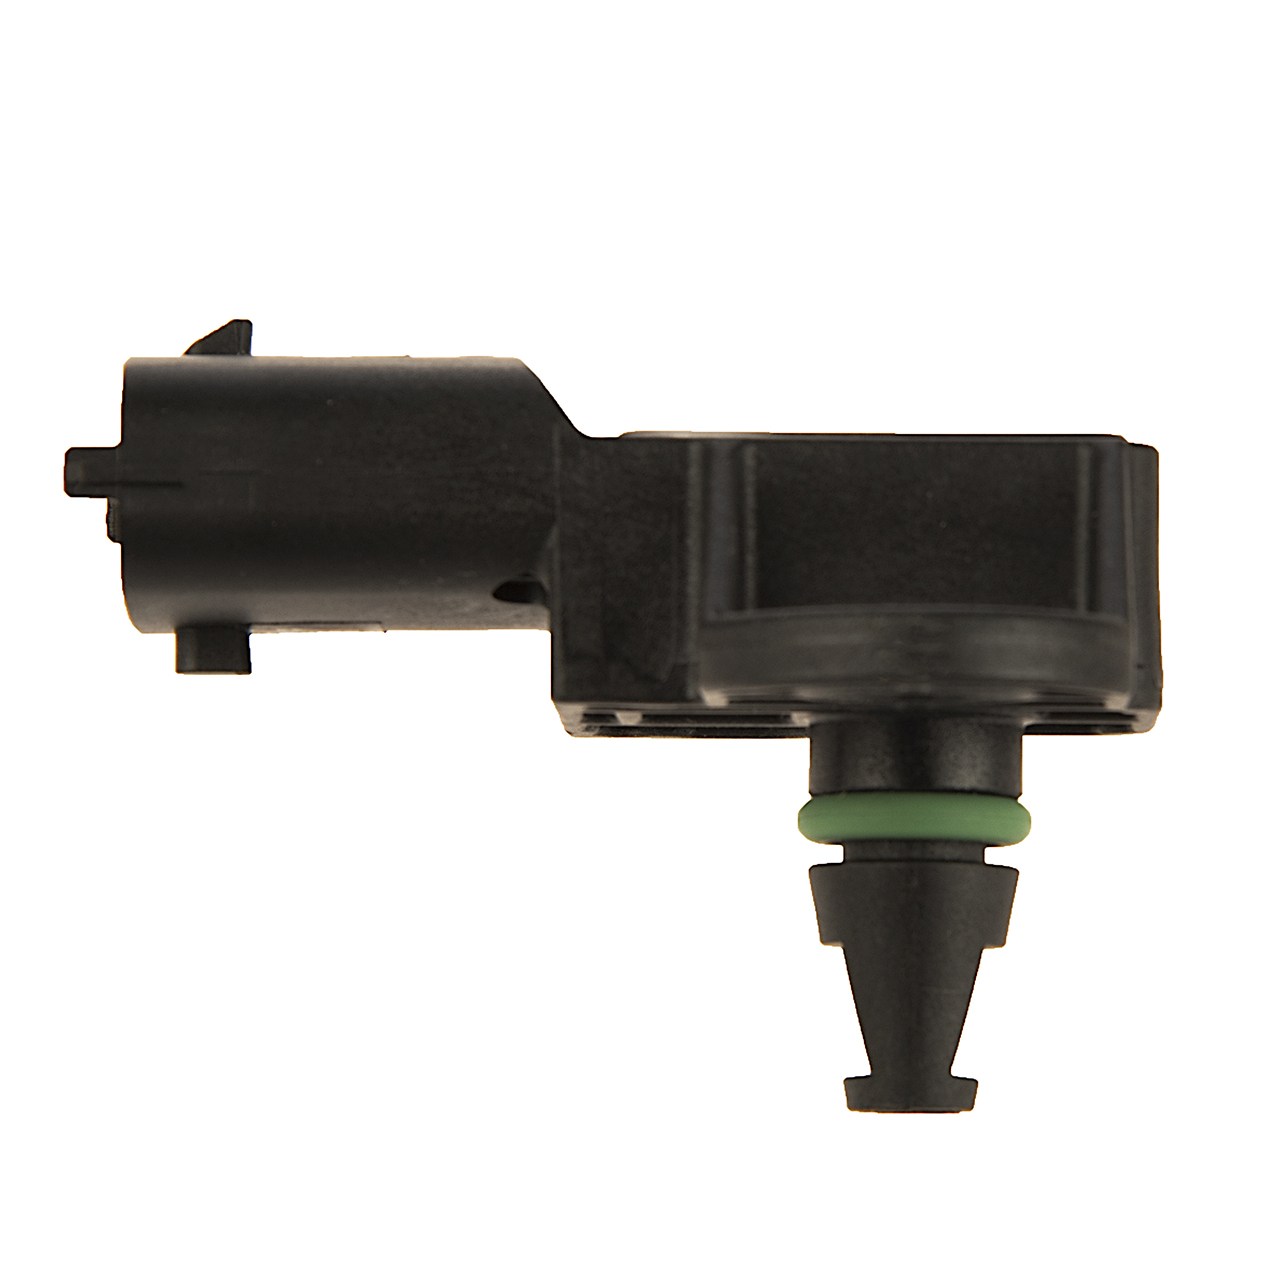 سنسور فشار مدل 1026060GG010 مناسب برای خودروهای جک